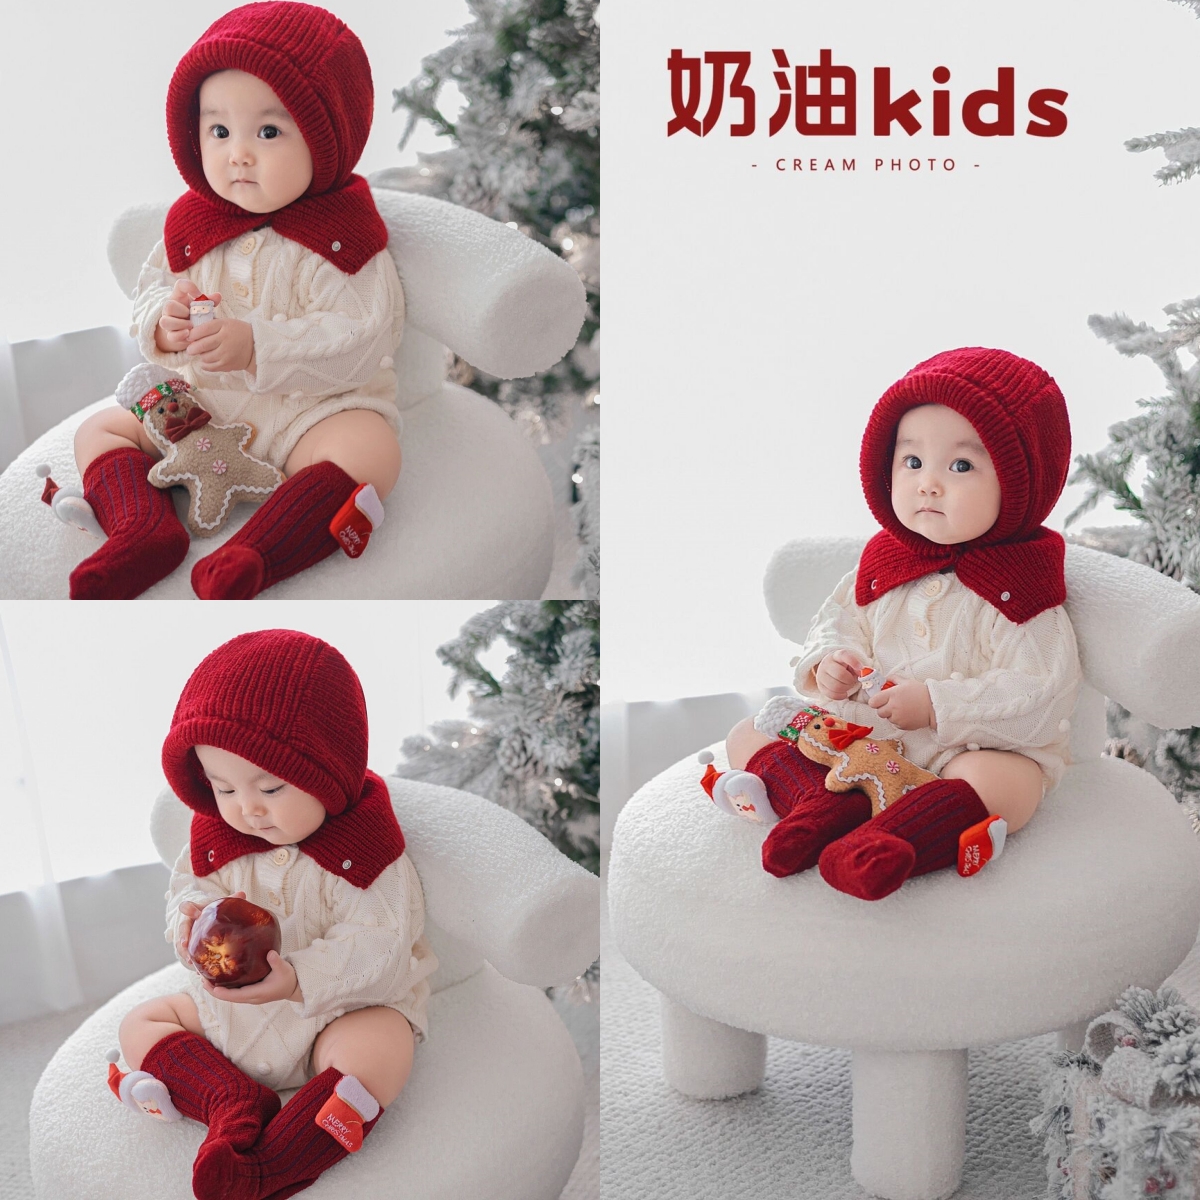 新款儿童摄影服装雪人圣诞节小红帽宝宝百天照周岁照拍照服装道具